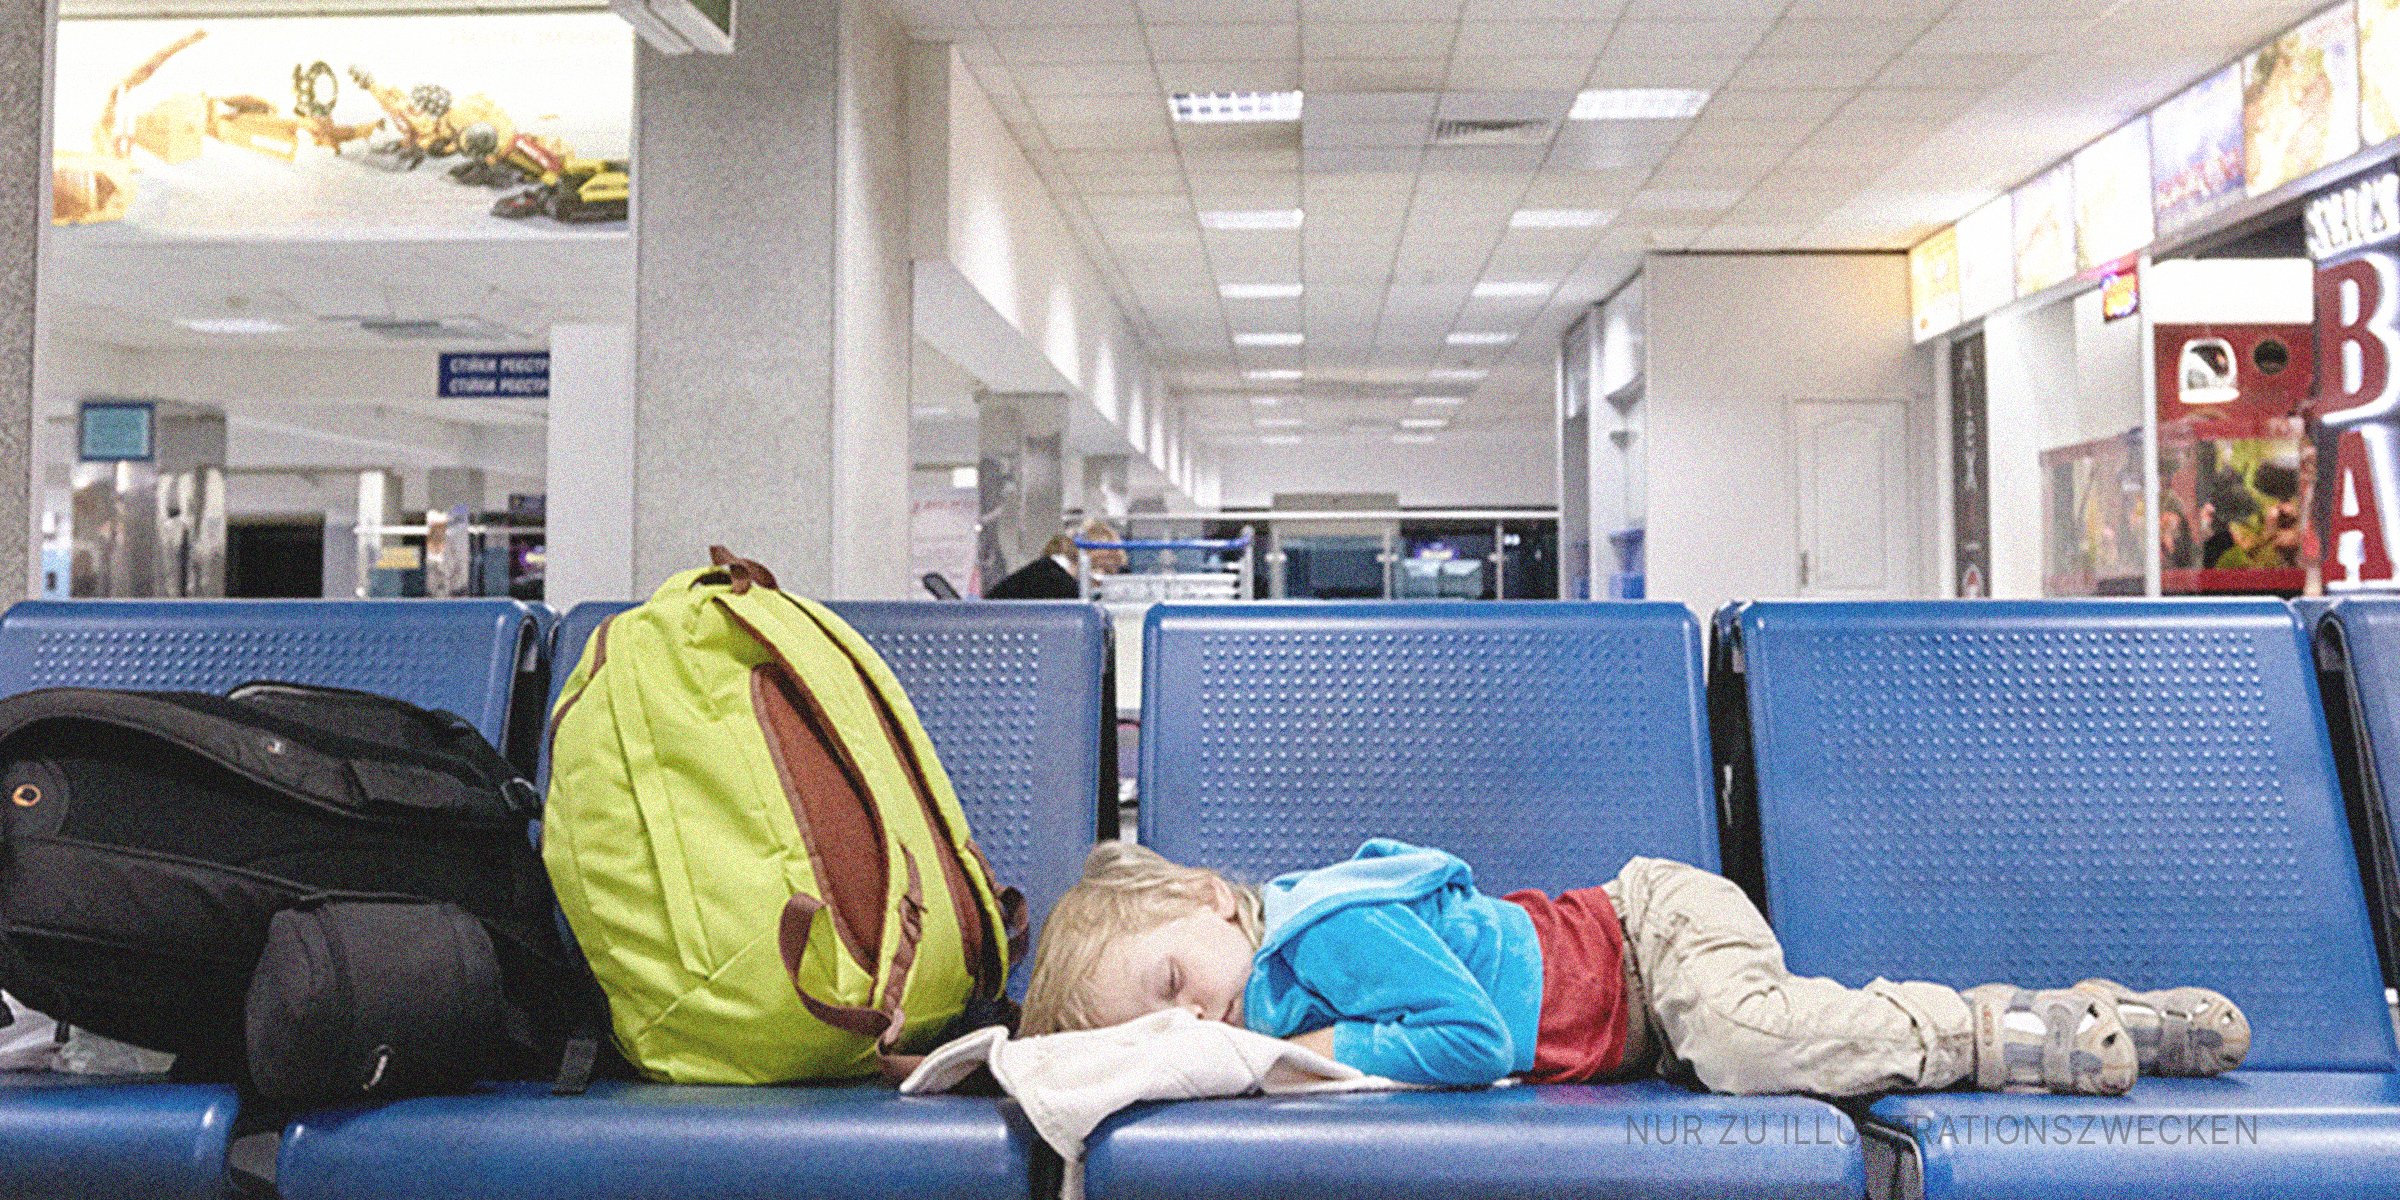 Kleiner Junge schläft auf den Sitzen am Flughafen. | Quelle: Shutterstock